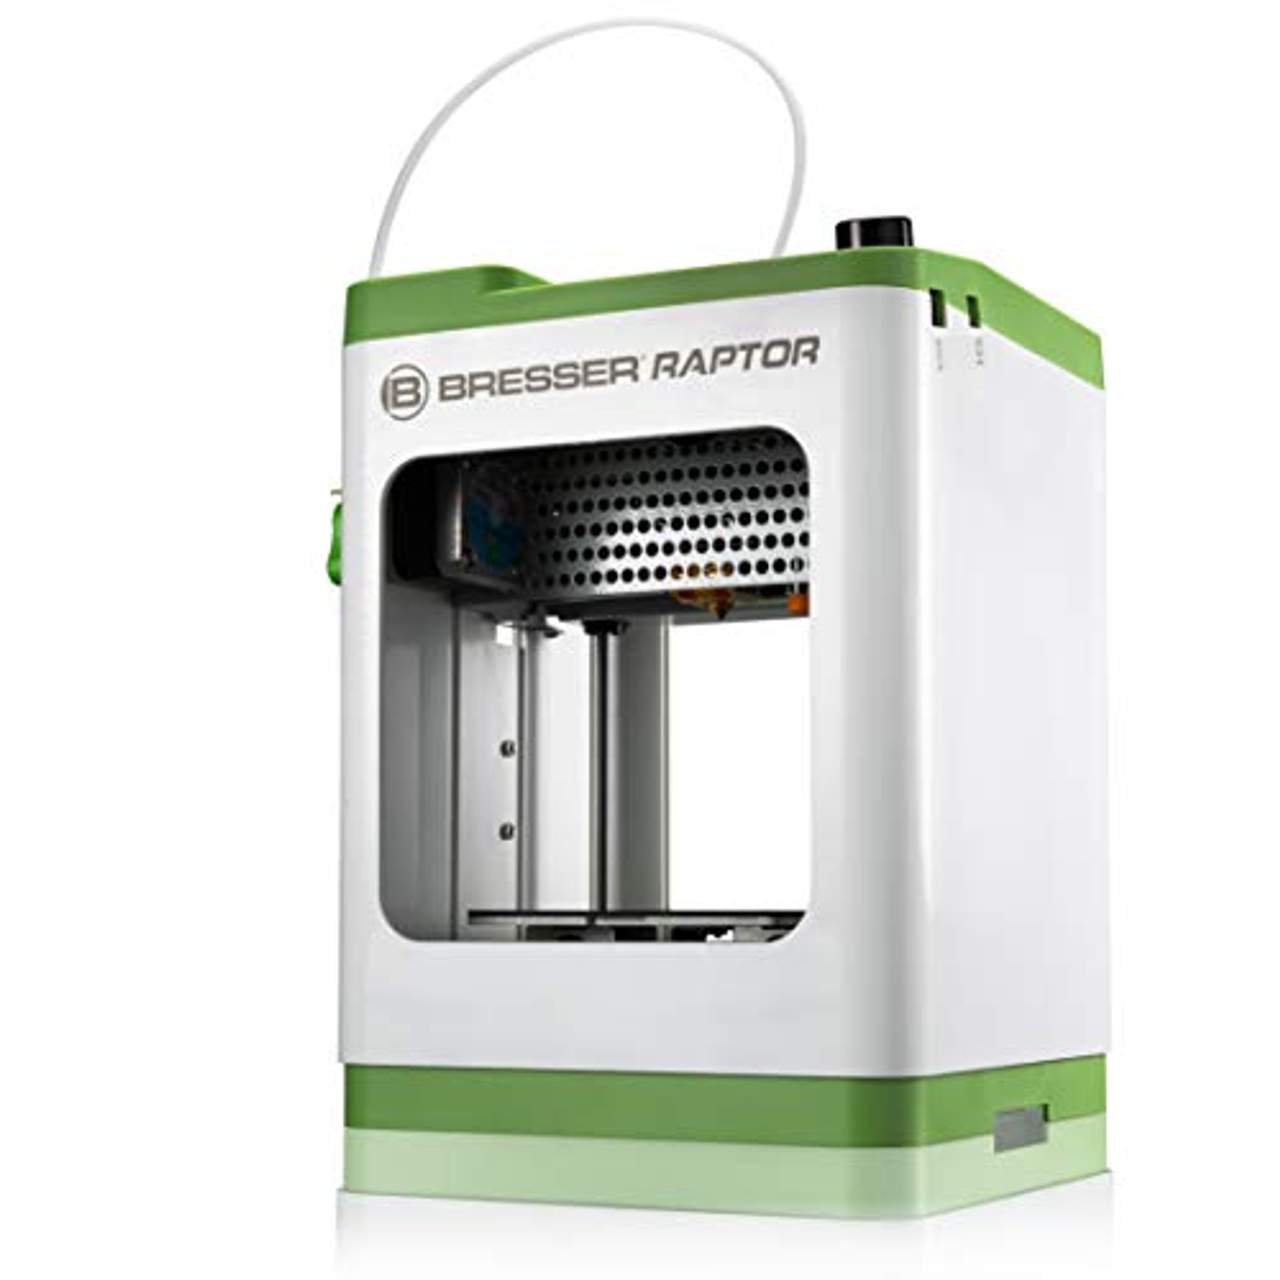 Bresser 3D Drucker Raptor WLAN Drucker in sehr kompakter Bauweise